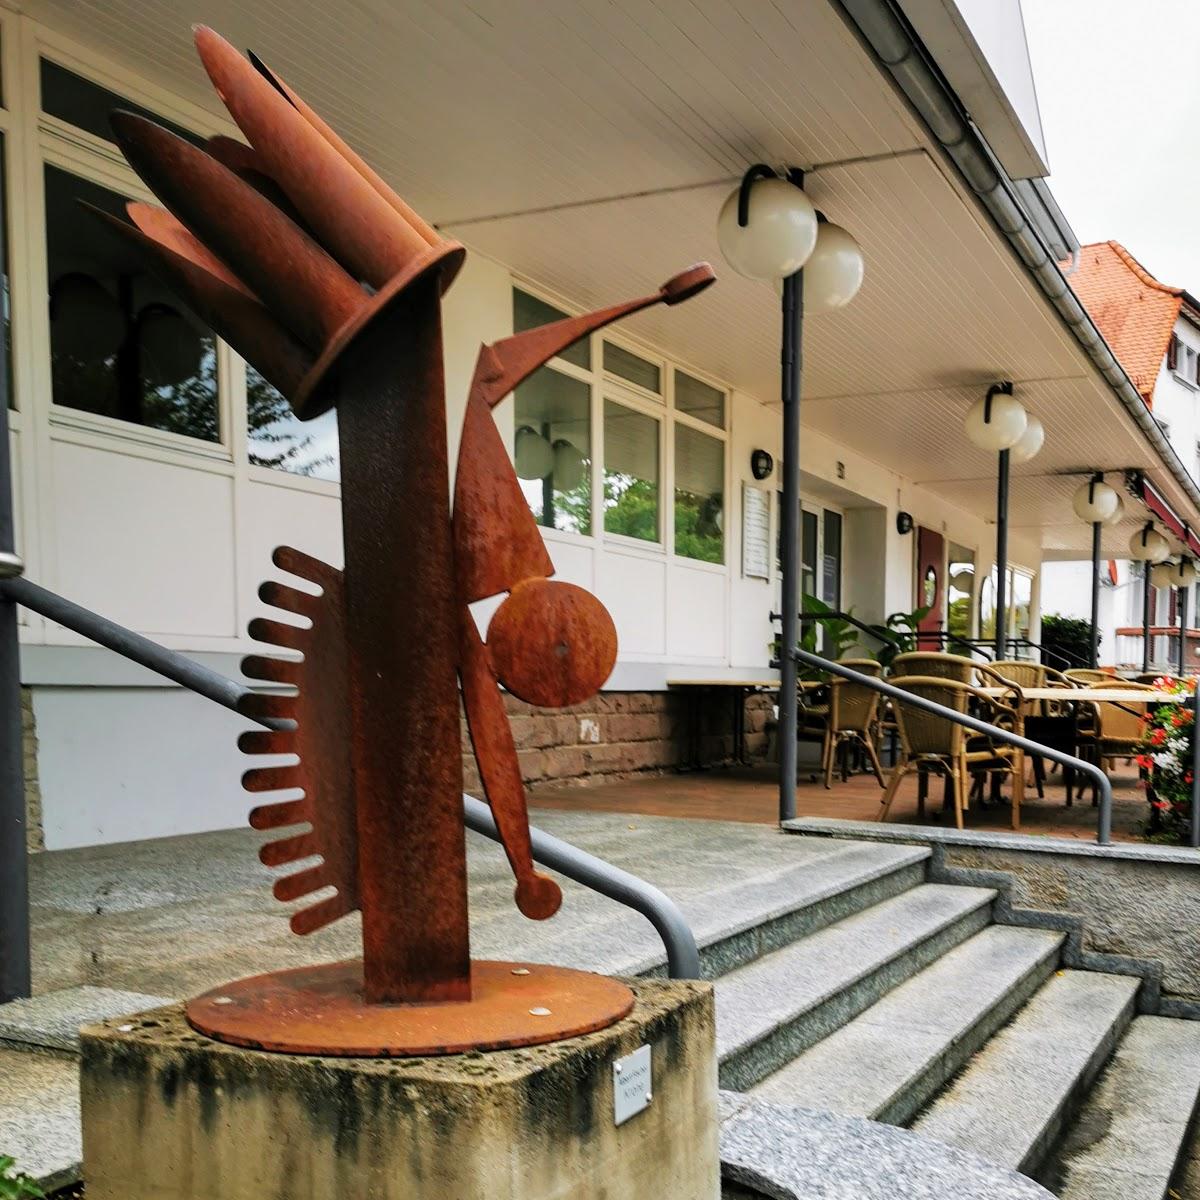 Restaurant "Krone" in Wiesloch